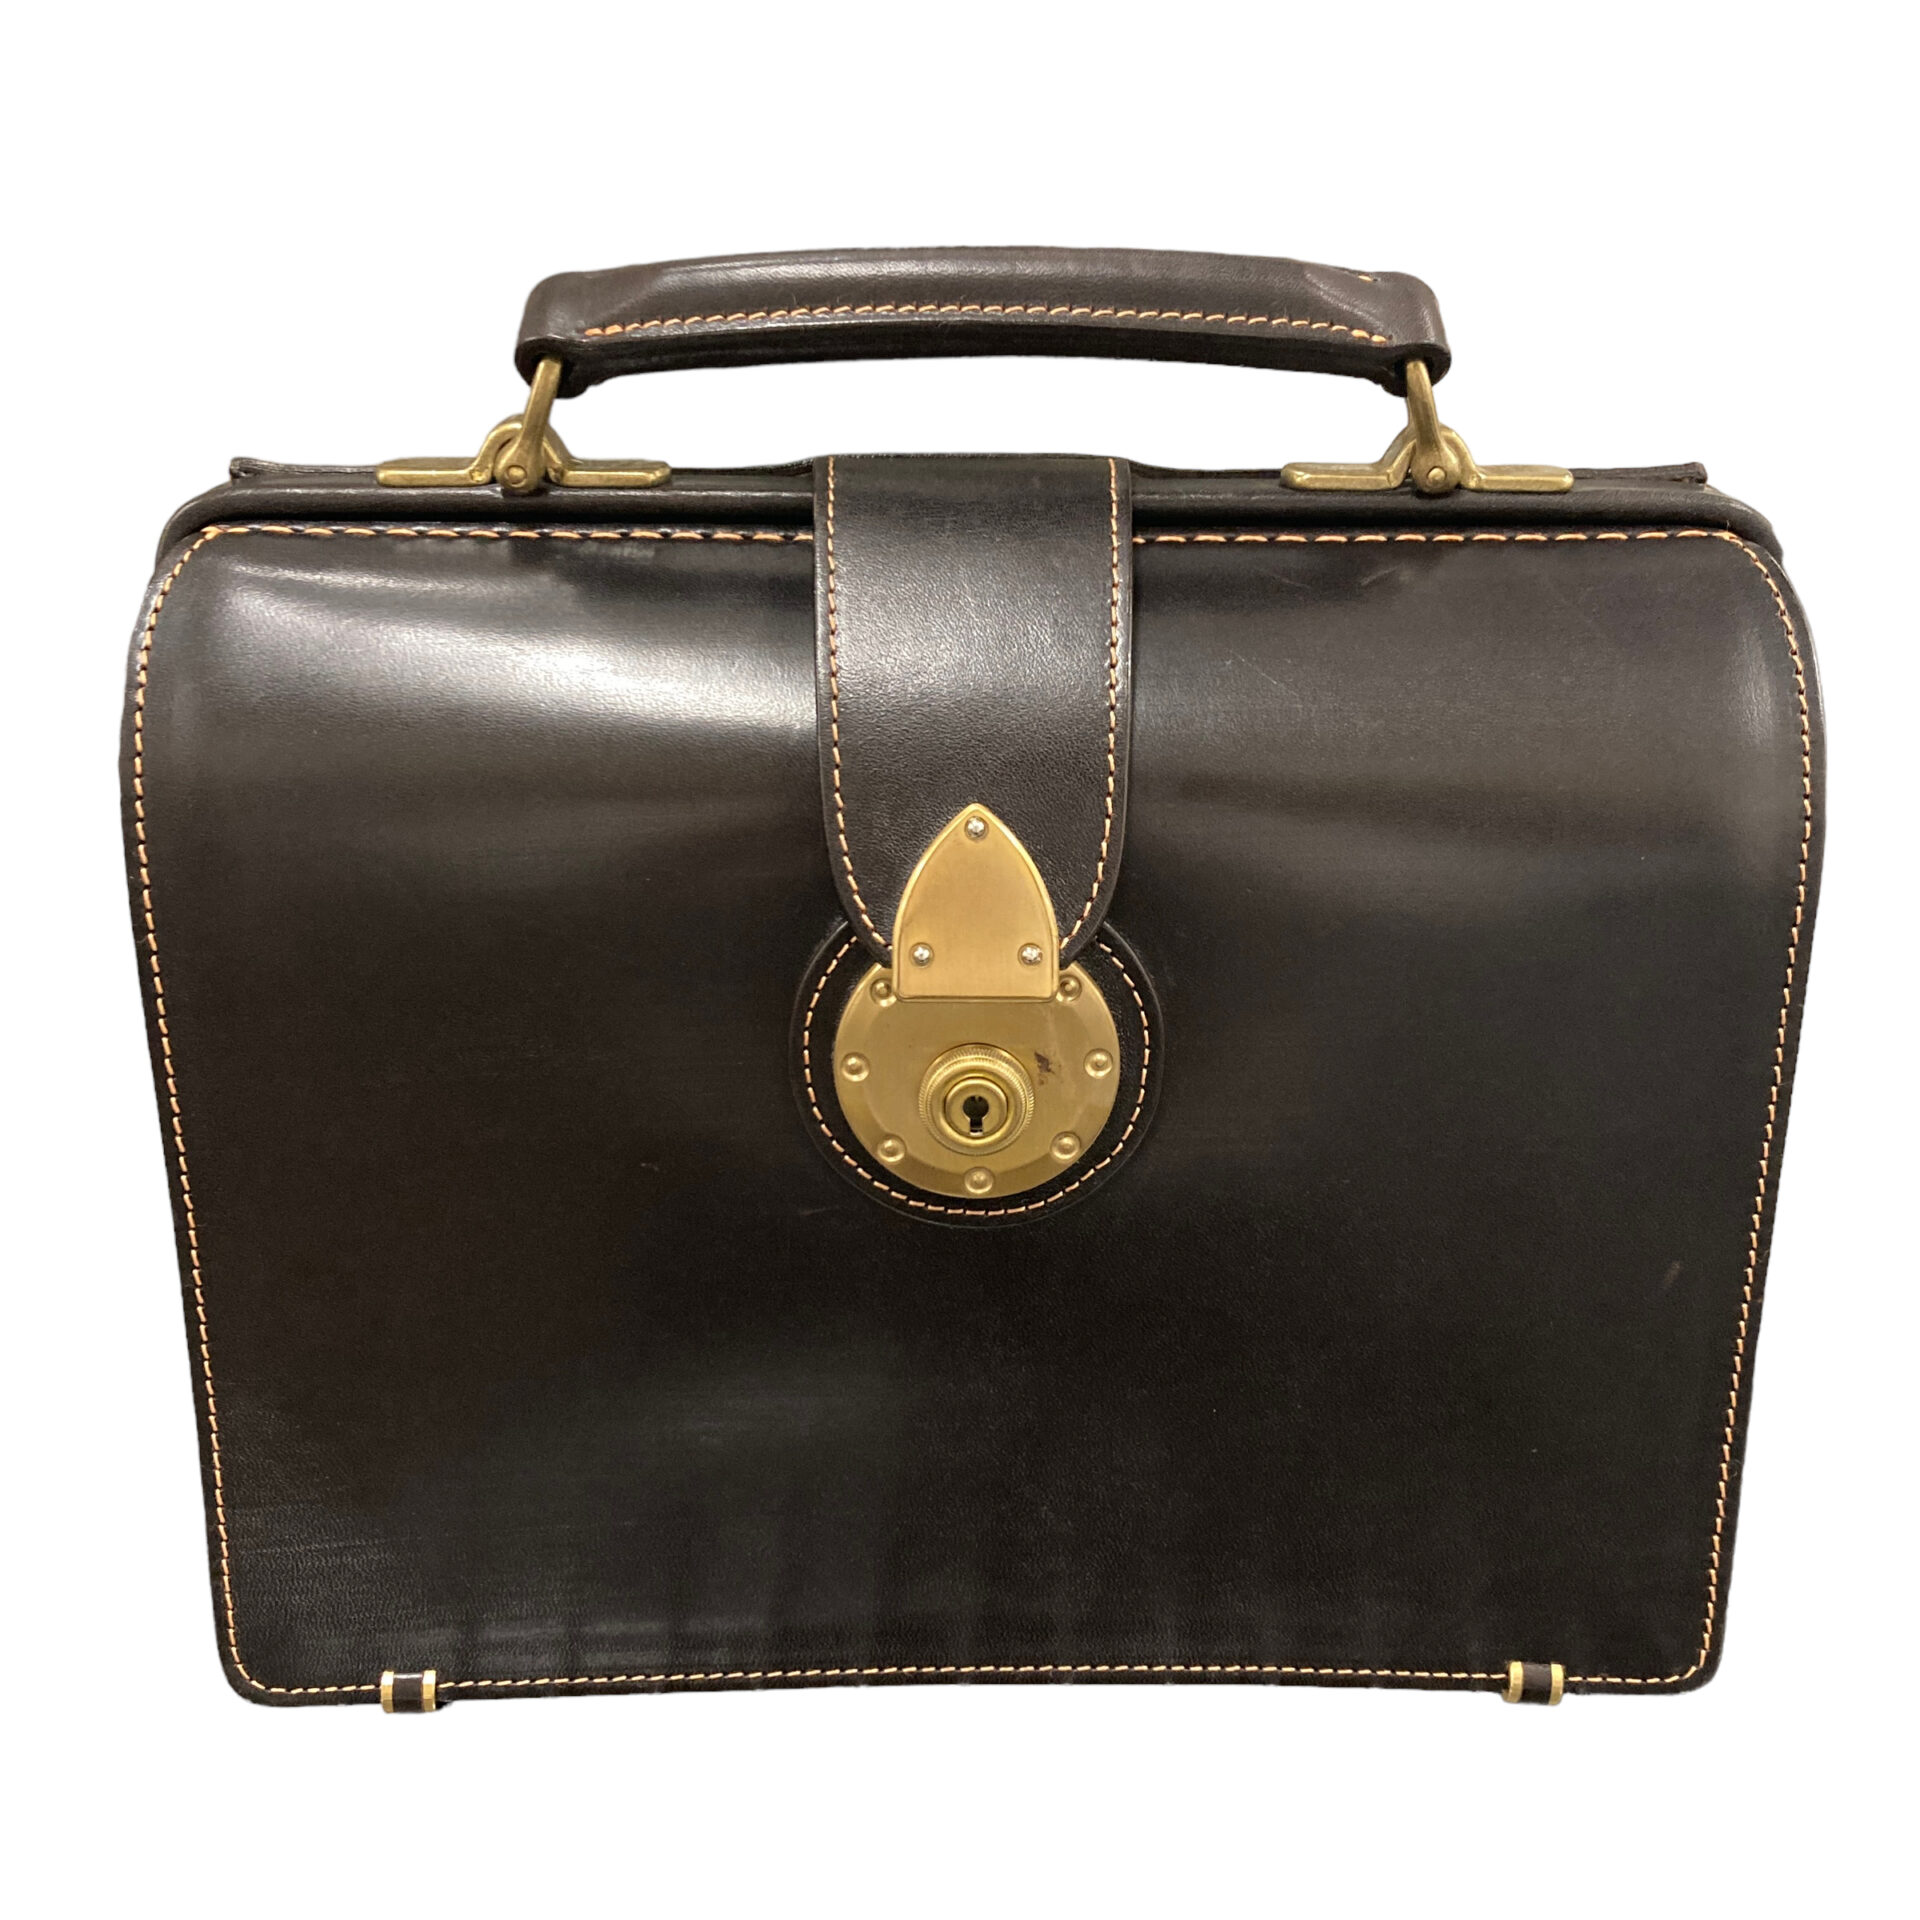 土屋鞄 ダレスバッグ 黒 ブライドルレザー 廃盤品 - ビジネスバッグ